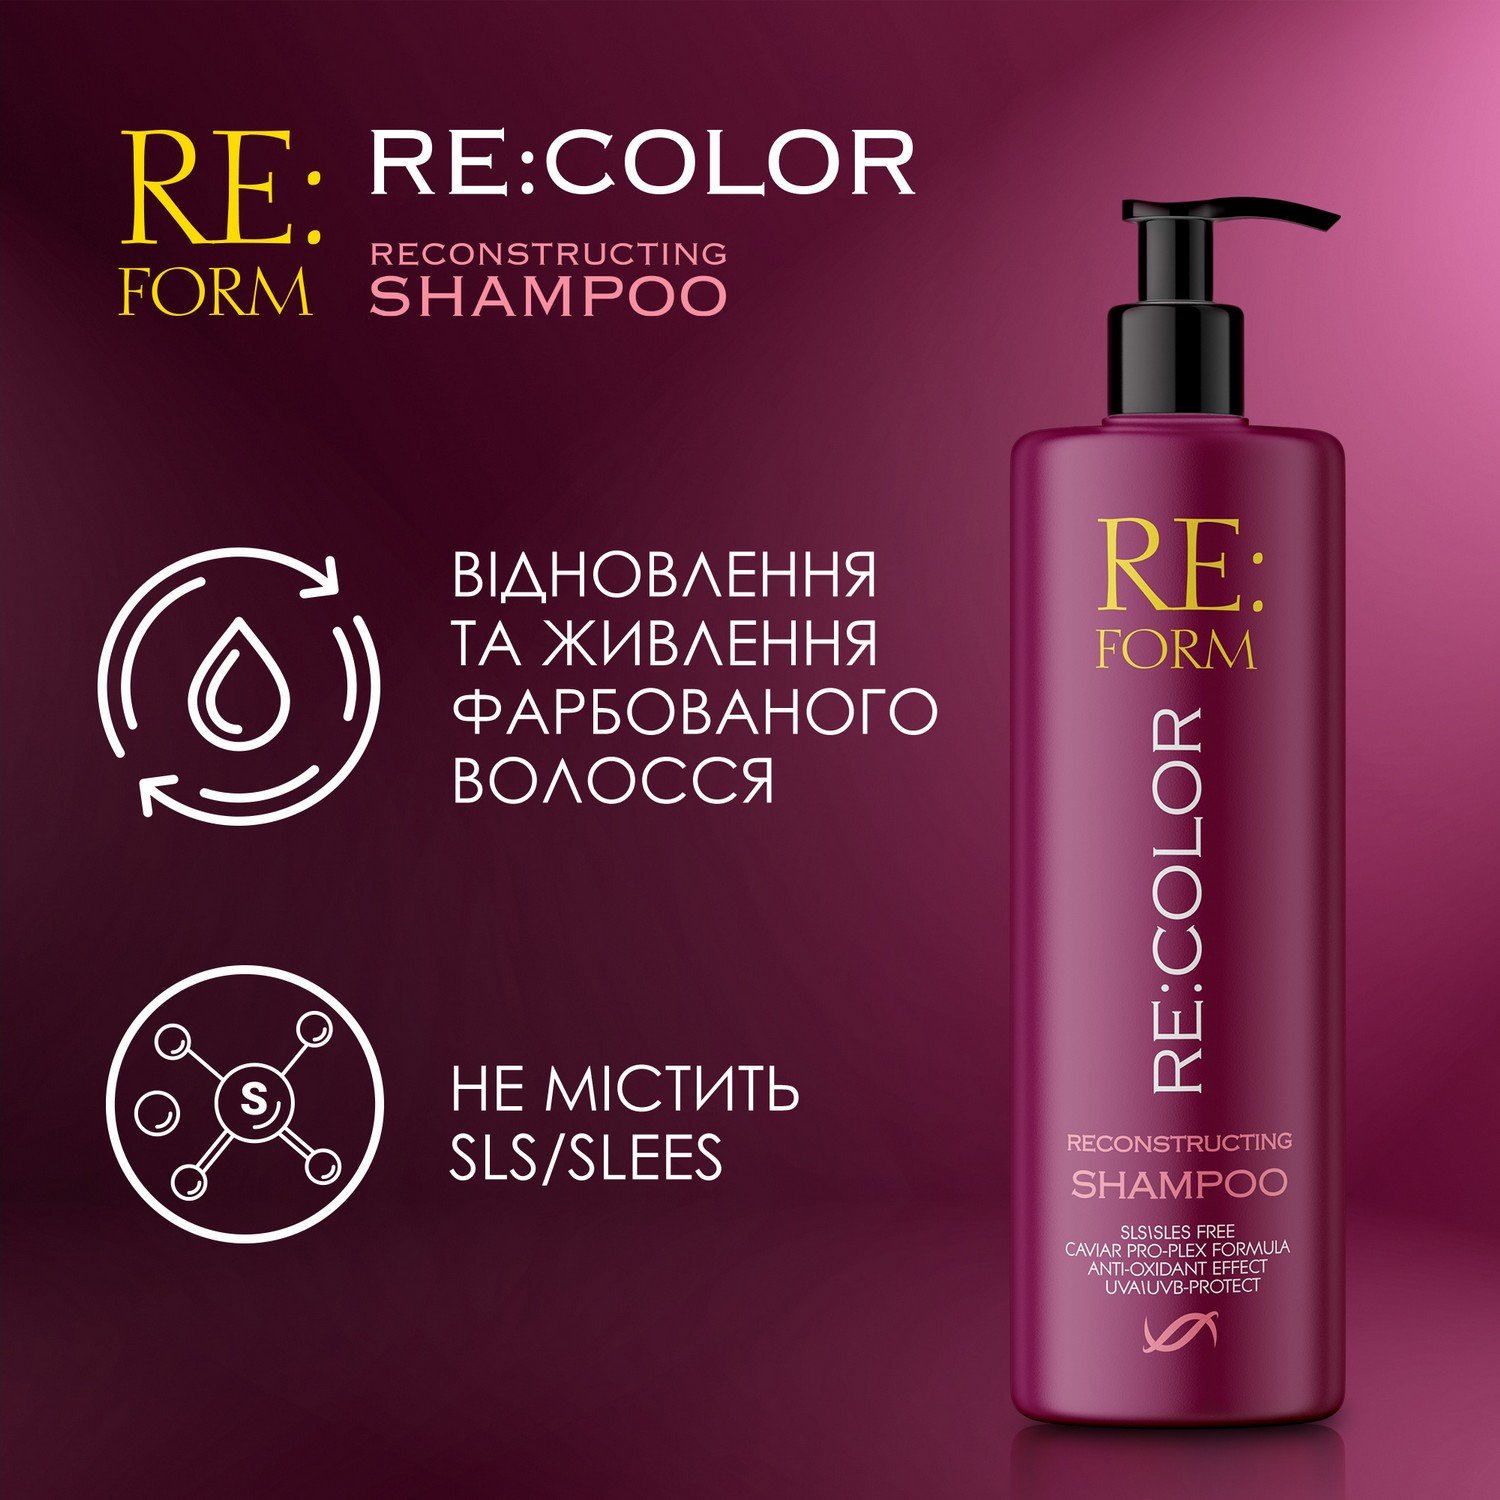 Реконструюючий шампунь Re:form Re:color Збереження кольору та відновлення фарбованого волосся, 400 мл - фото 4